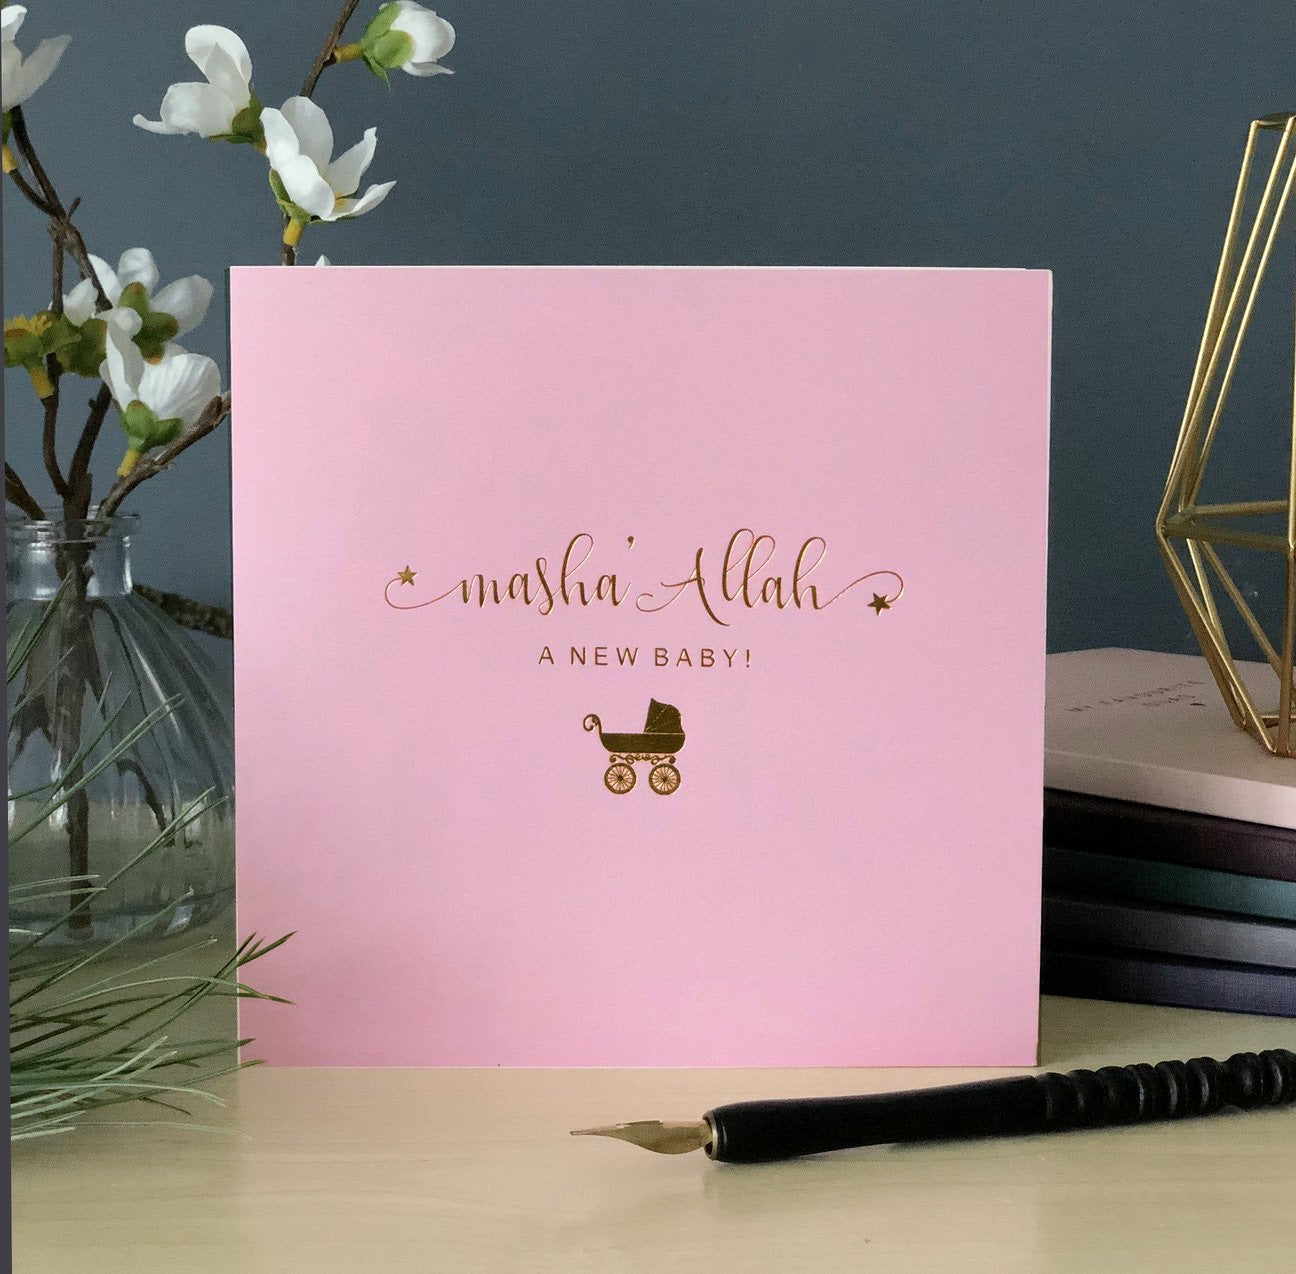 Masha'Allah, A New Baby! Gold Foiled Card - Pink - Anafiya Gifts